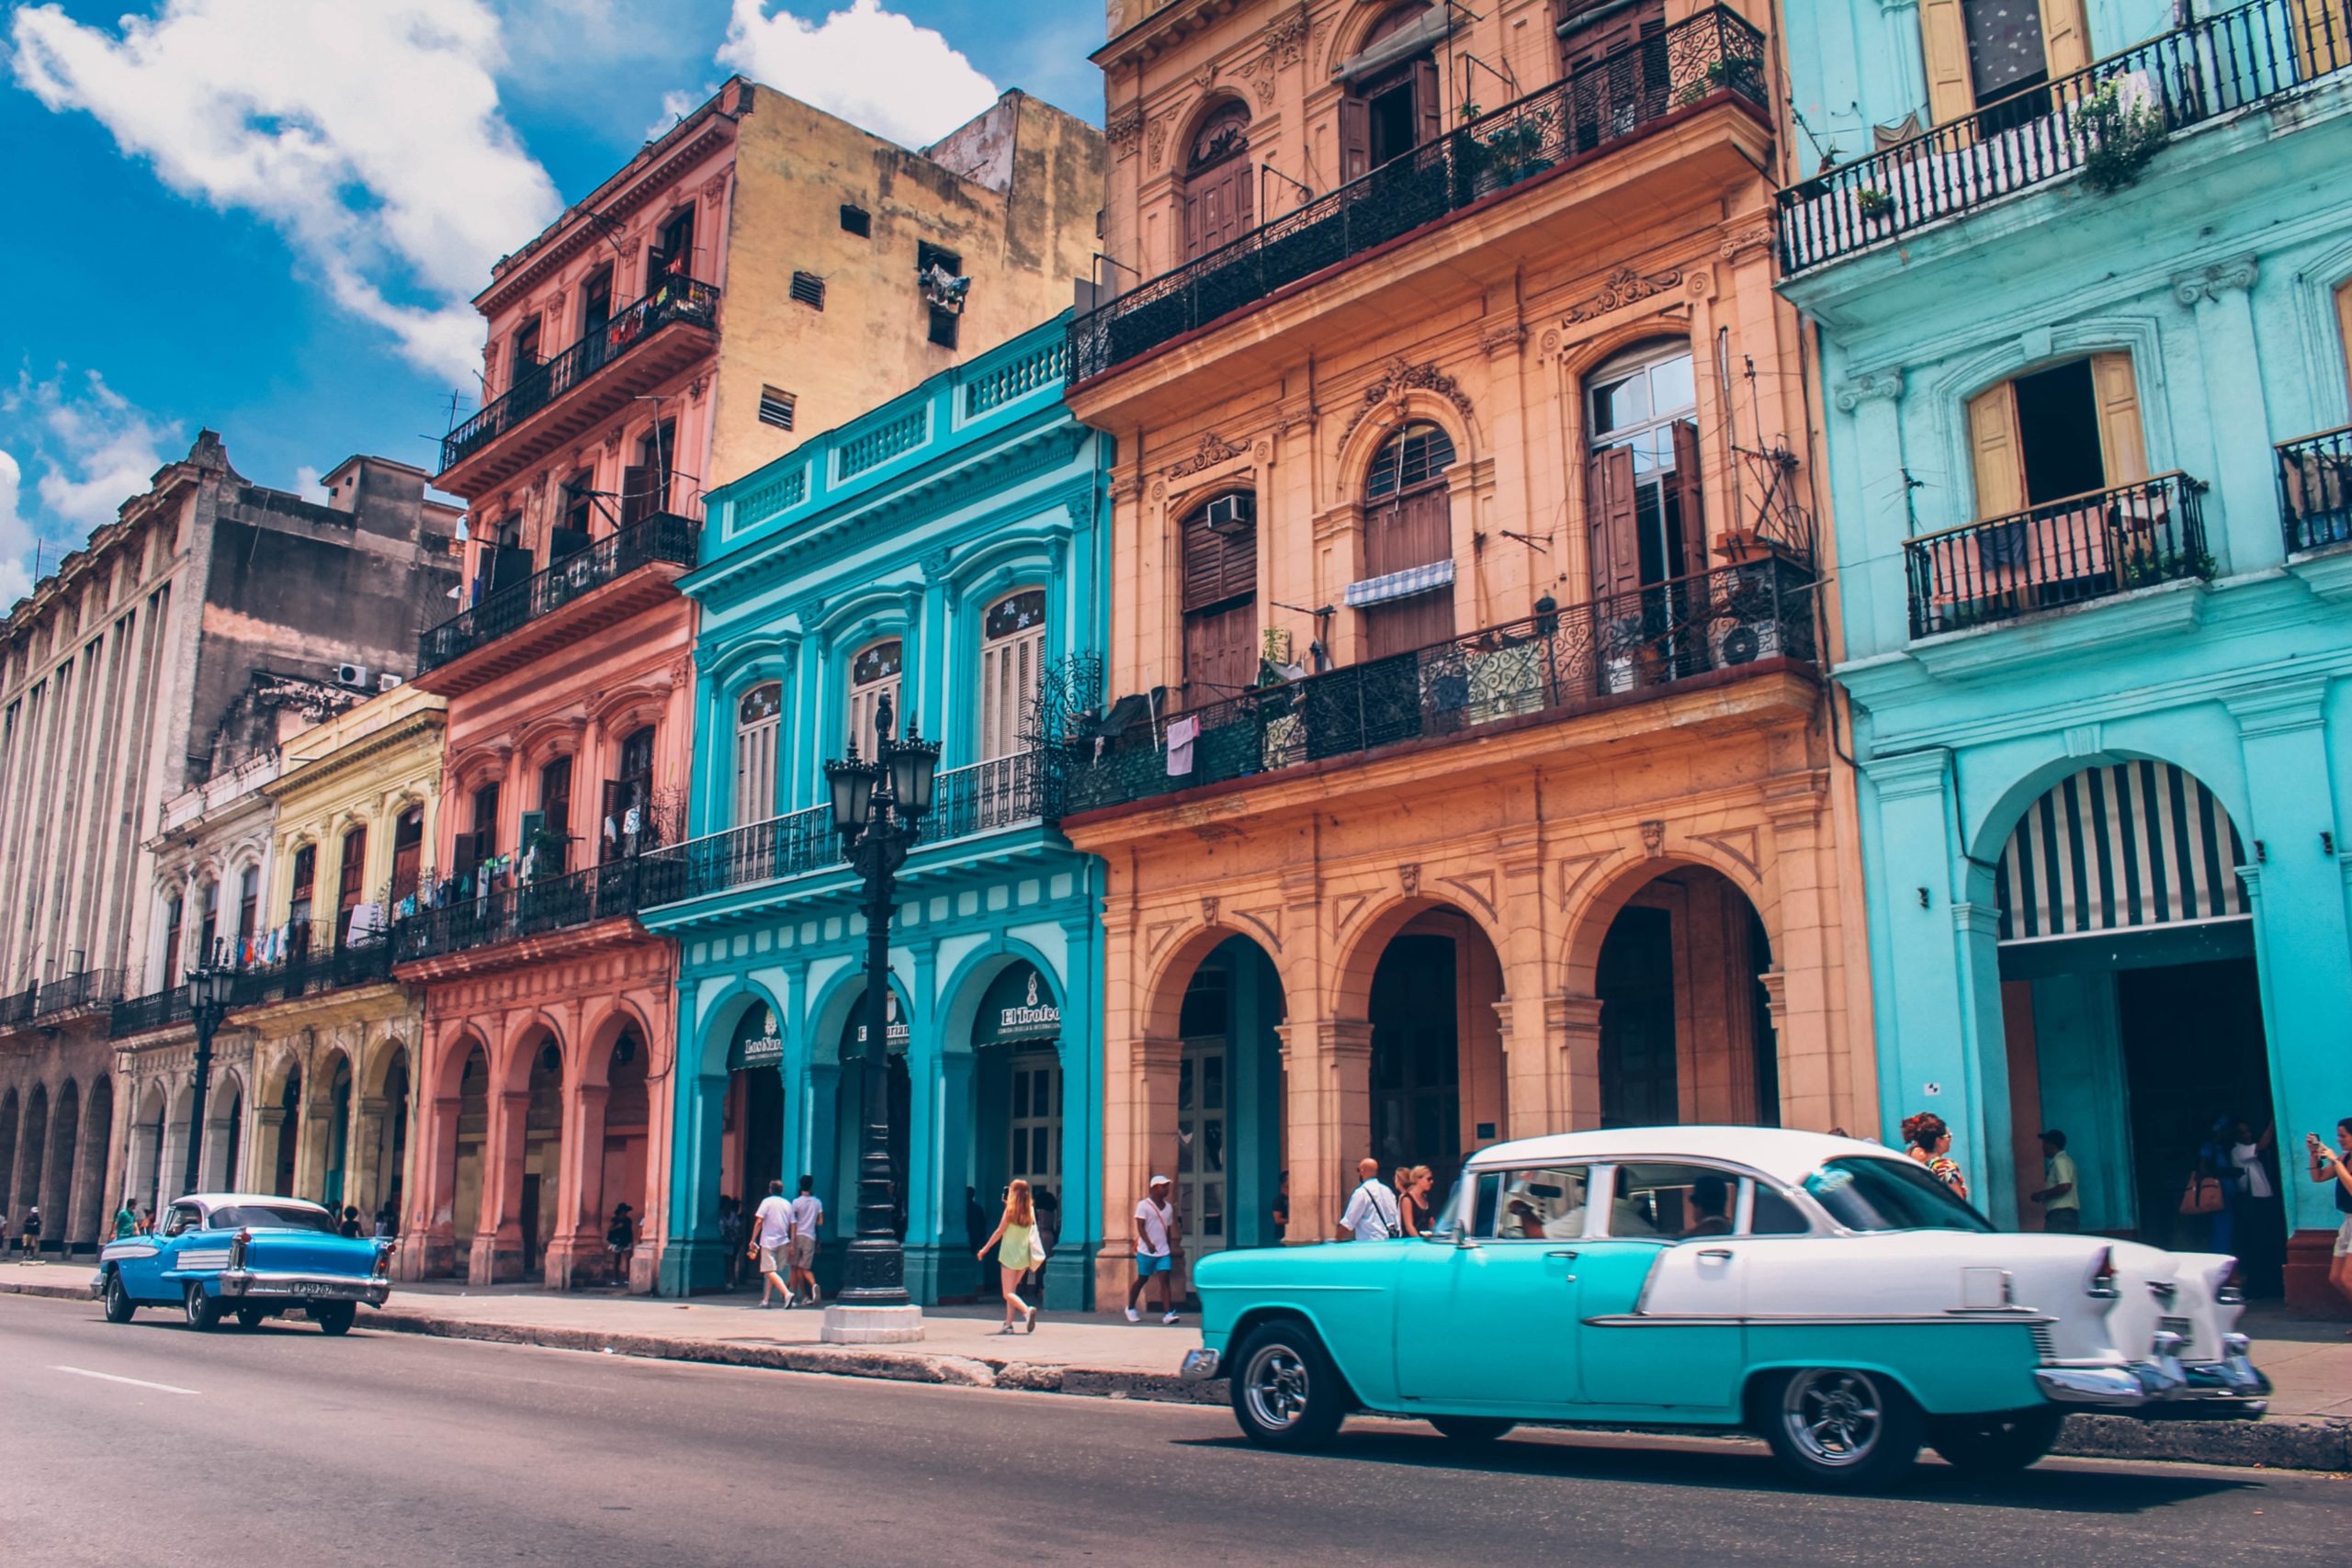 Zažij autentickou Kubu! Do Havany nebo Varadera letíš z Vídně od 12 790 Kč